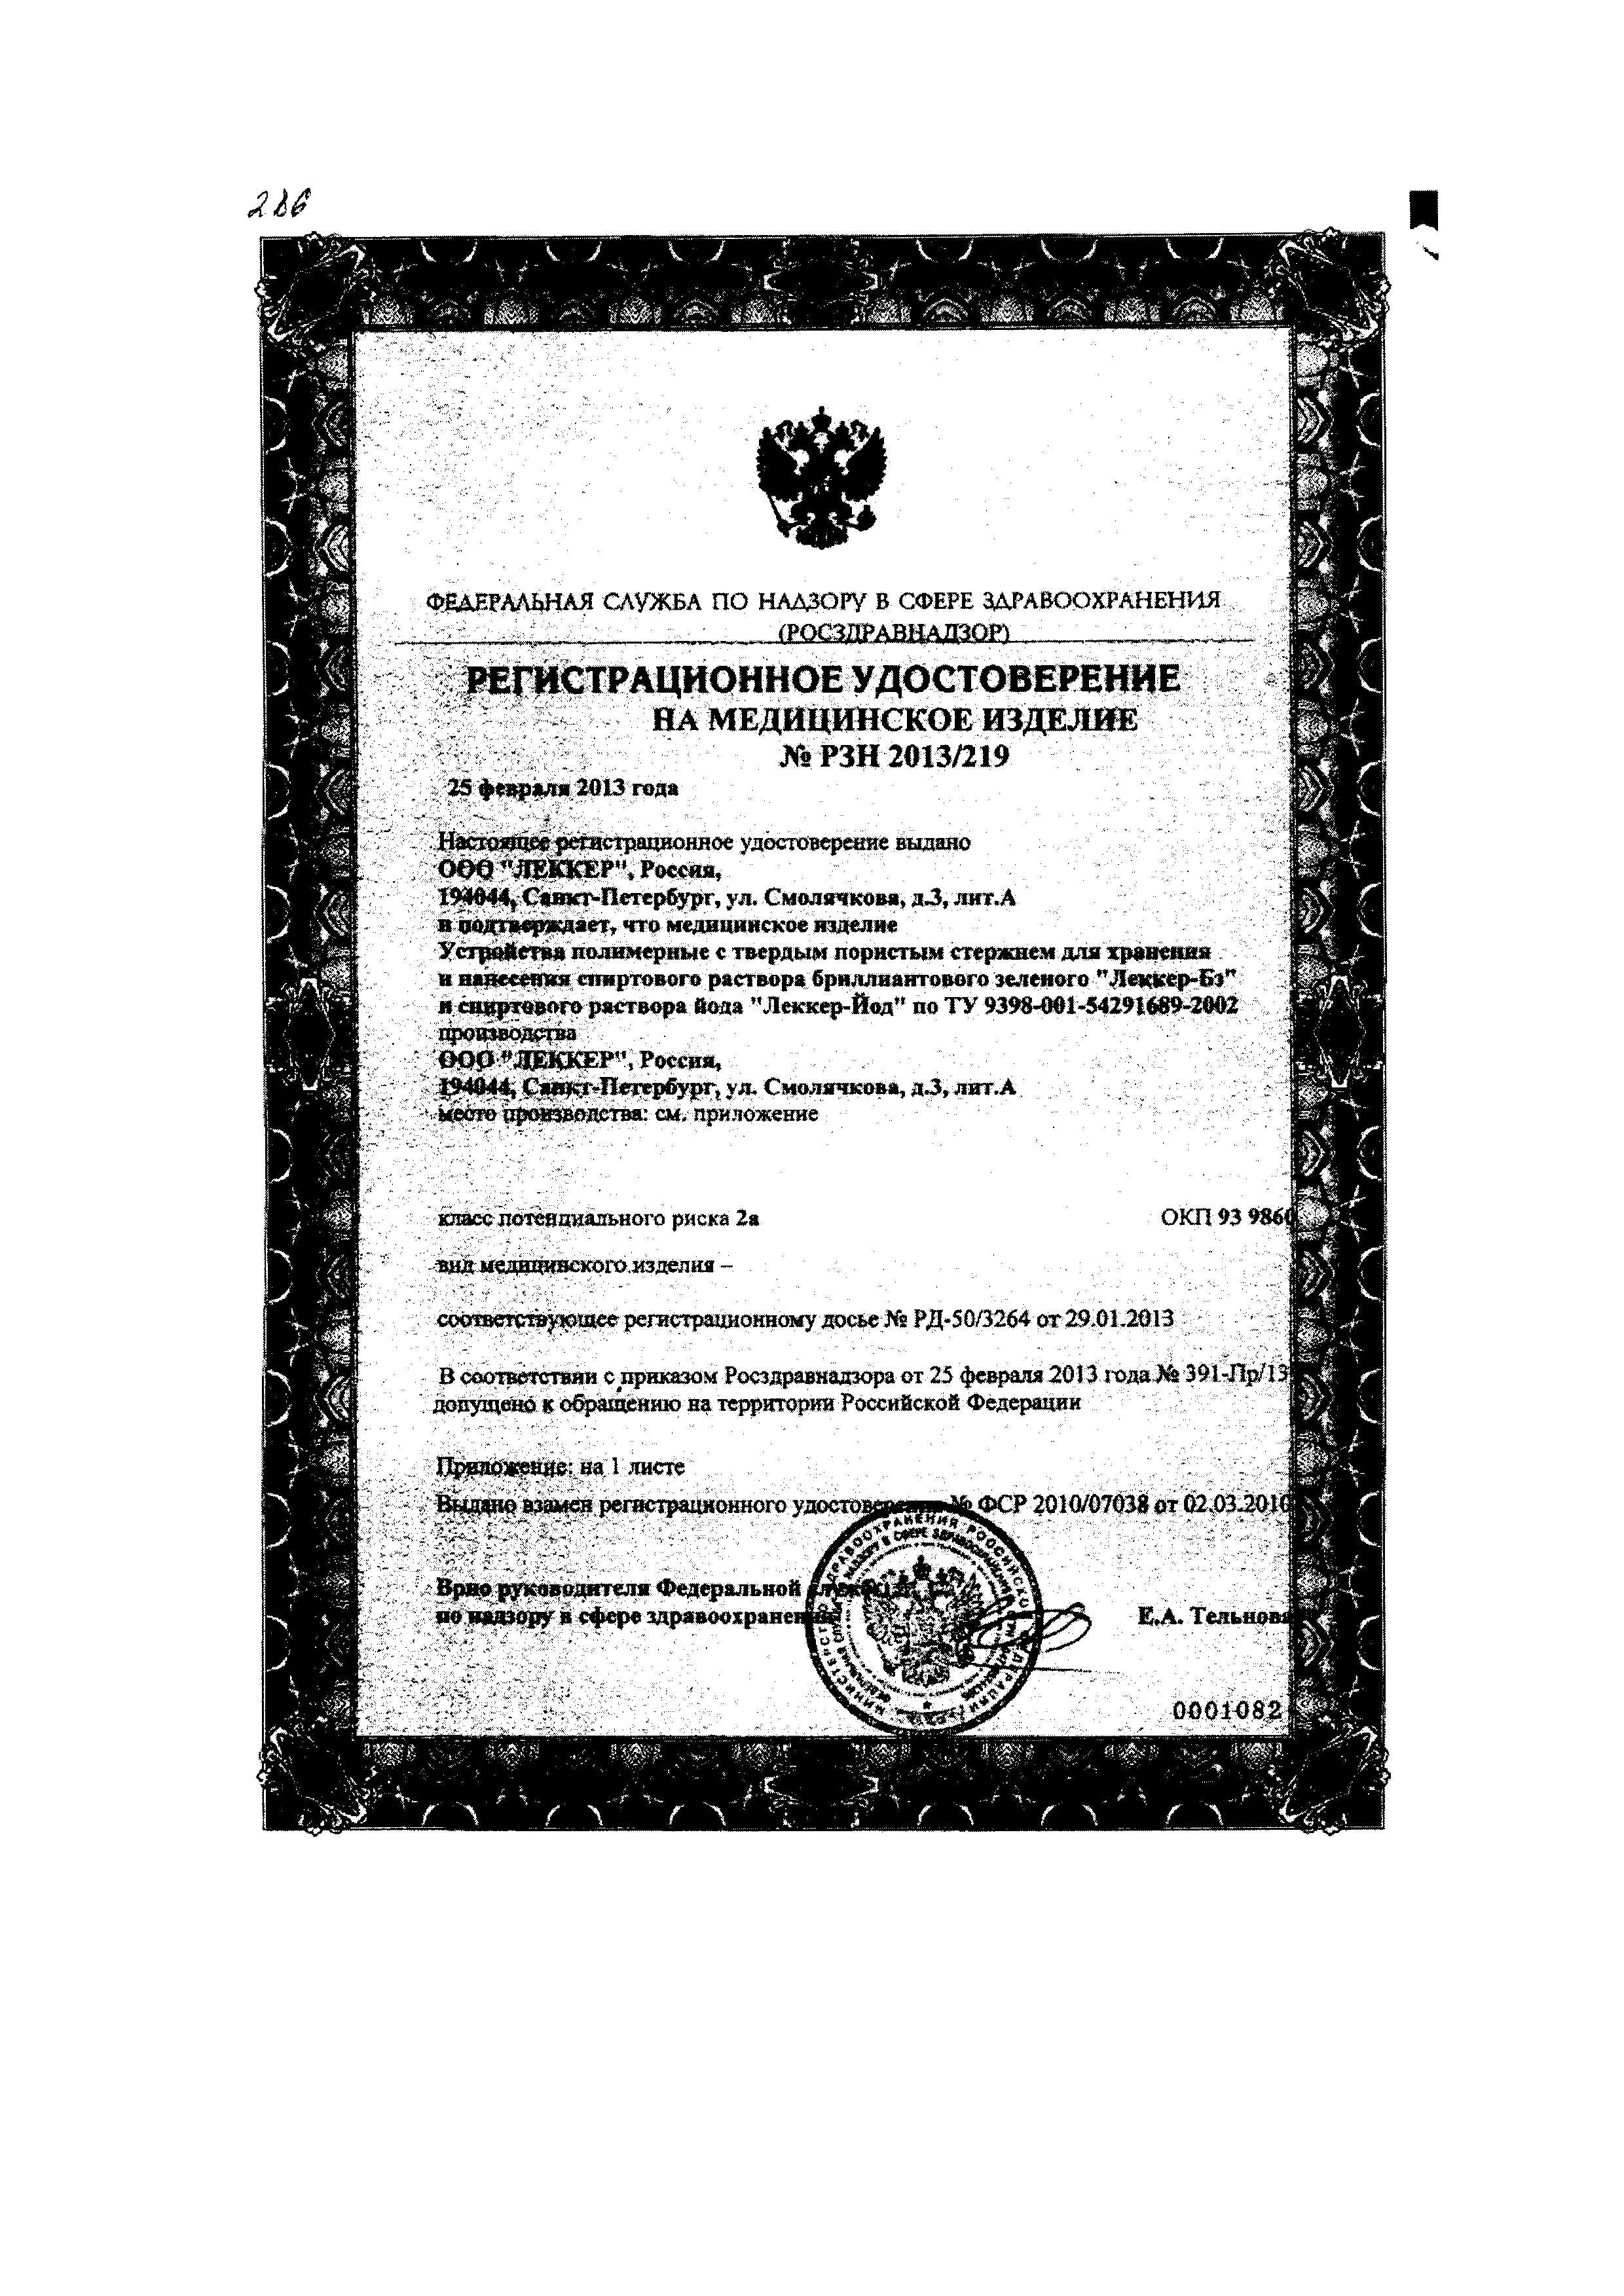 Бриллиантового зеленого раствор спиртовой Леккер фломастер сертификат